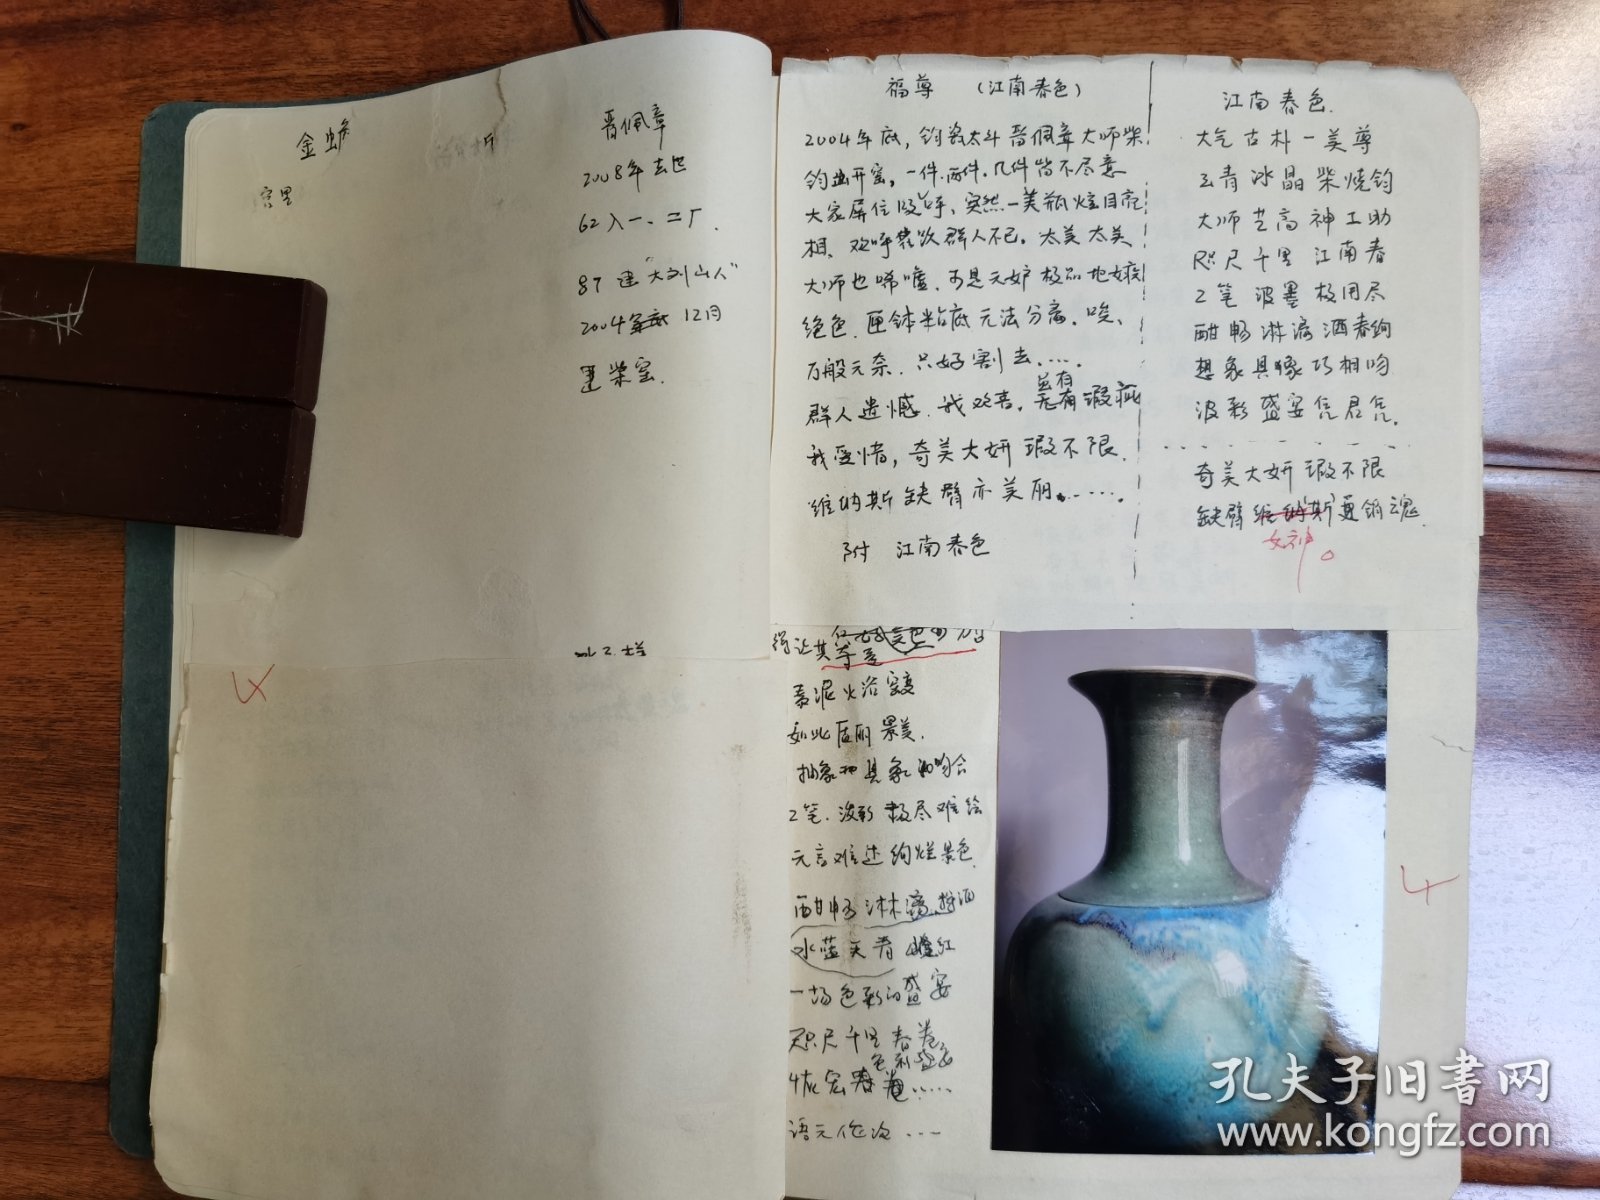 河南禹州钧瓷窑口名家代表作照片两大本，内含照片166张 并配有诗文。疑似出版书籍前的初版